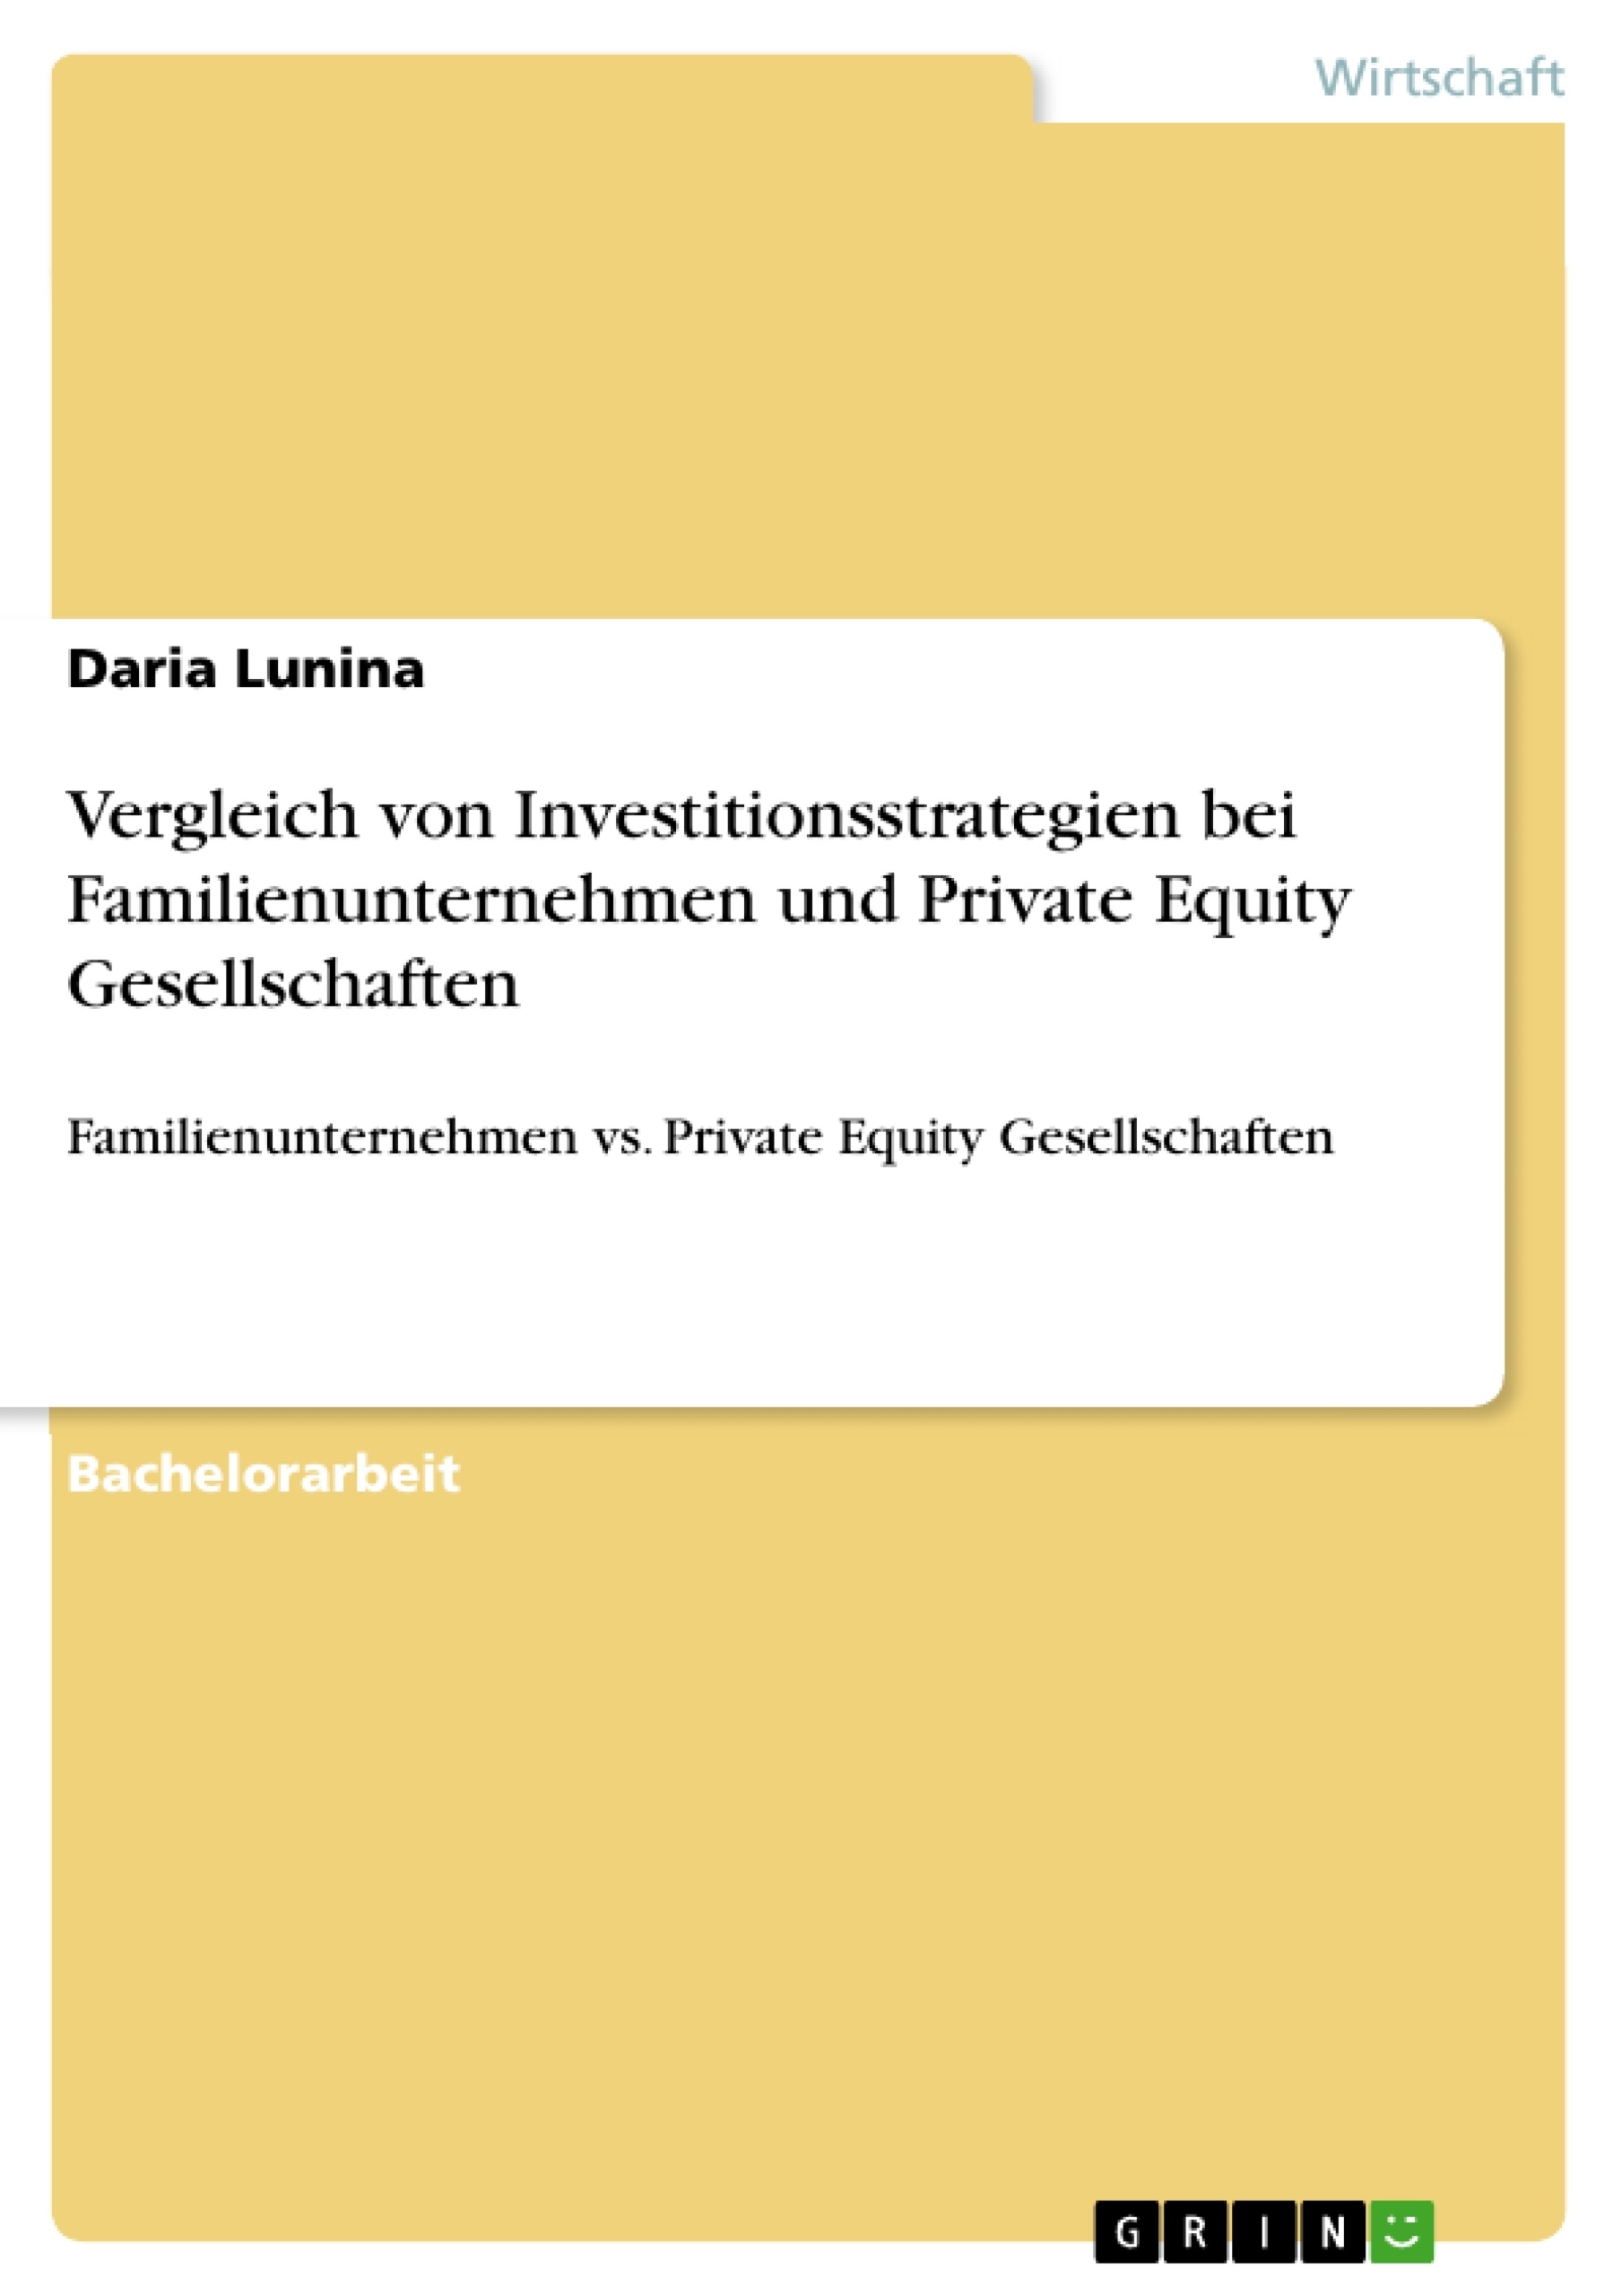 Title: Vergleich von Investitionsstrategien bei Familienunternehmen und Private Equity Gesellschaften